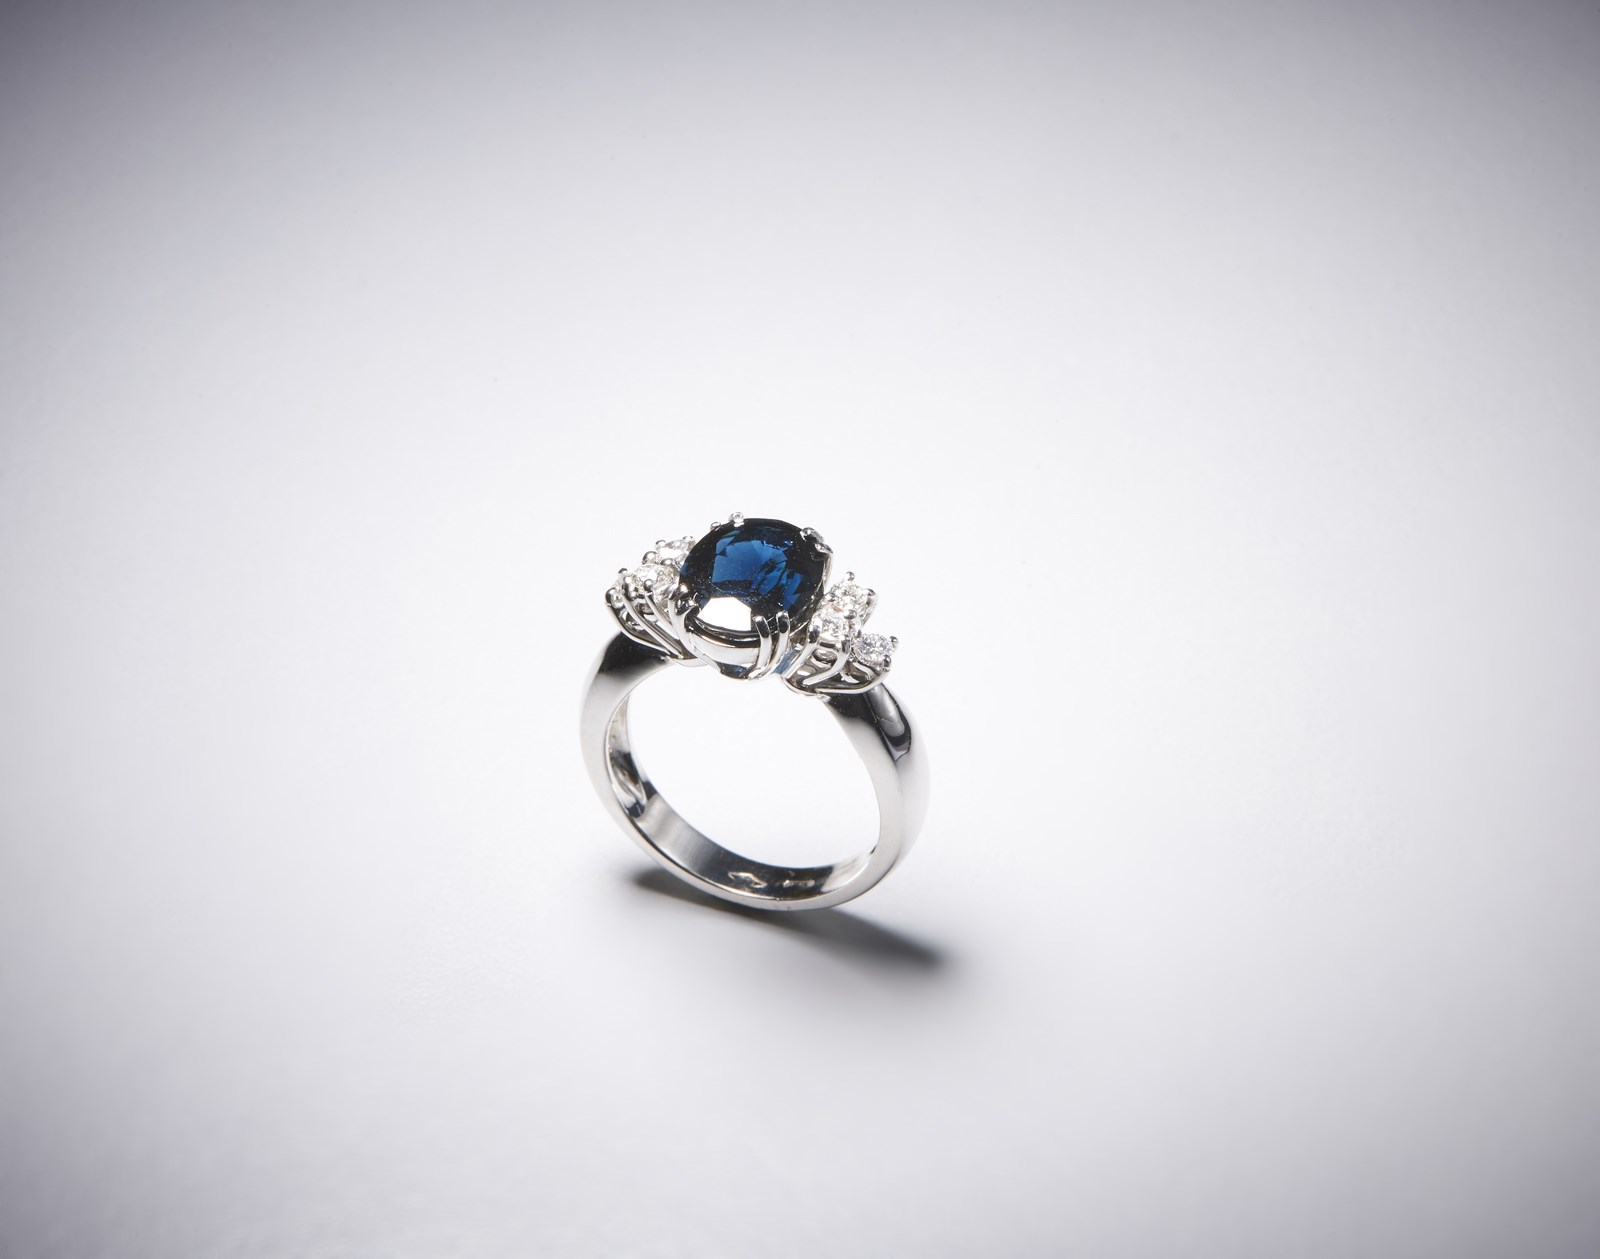 Elegante anello in oro bianco 750/1000 con zaffiro blu  taglio ovale di circa 4,00 ct e diamanti taglio a brillante di circa 0,40 ct. (. )